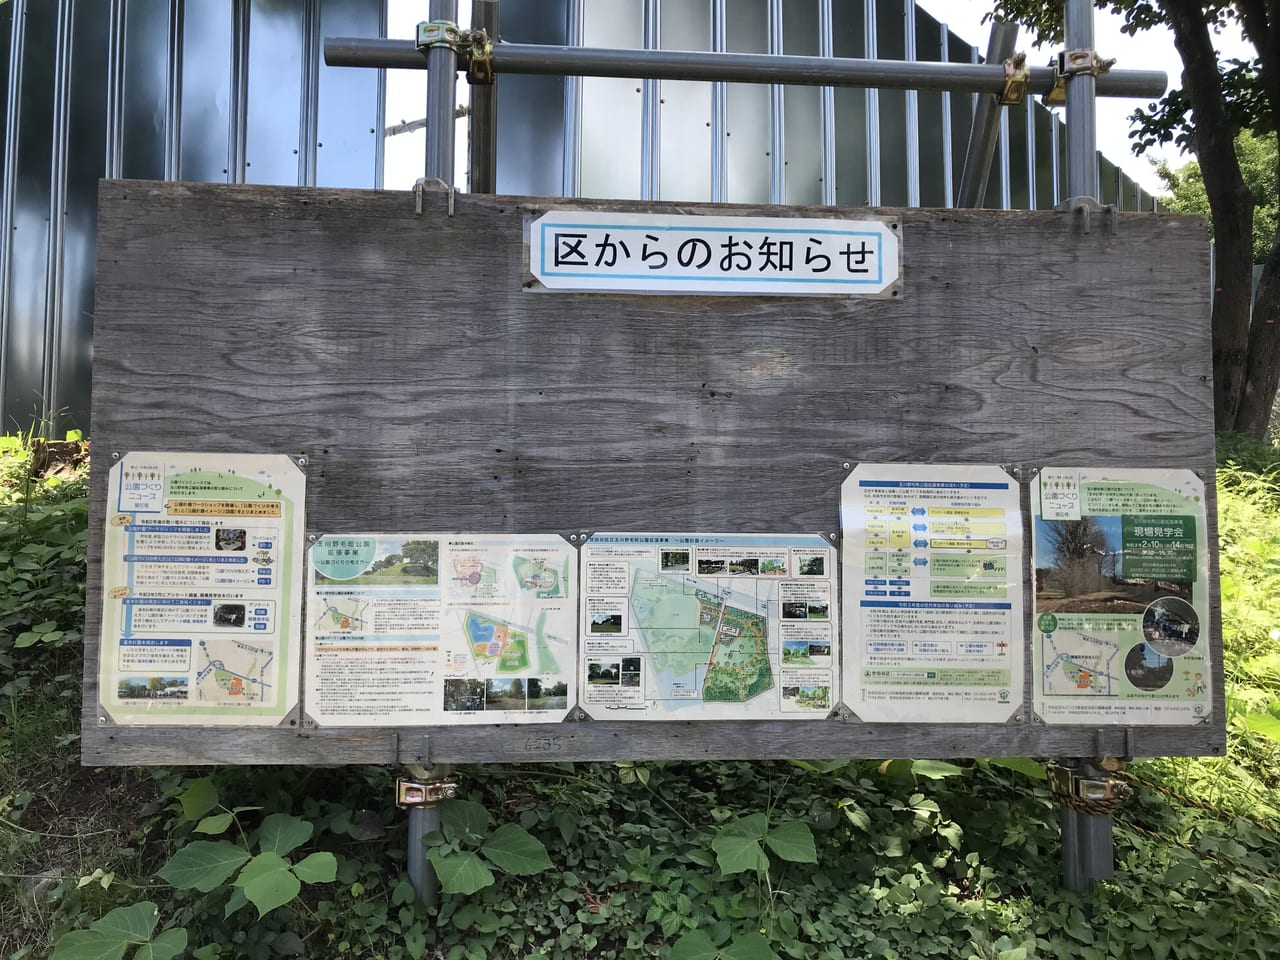 世田谷区玉川野毛町公園第1回オープンパークが2021年7月30日31日に開催されます。